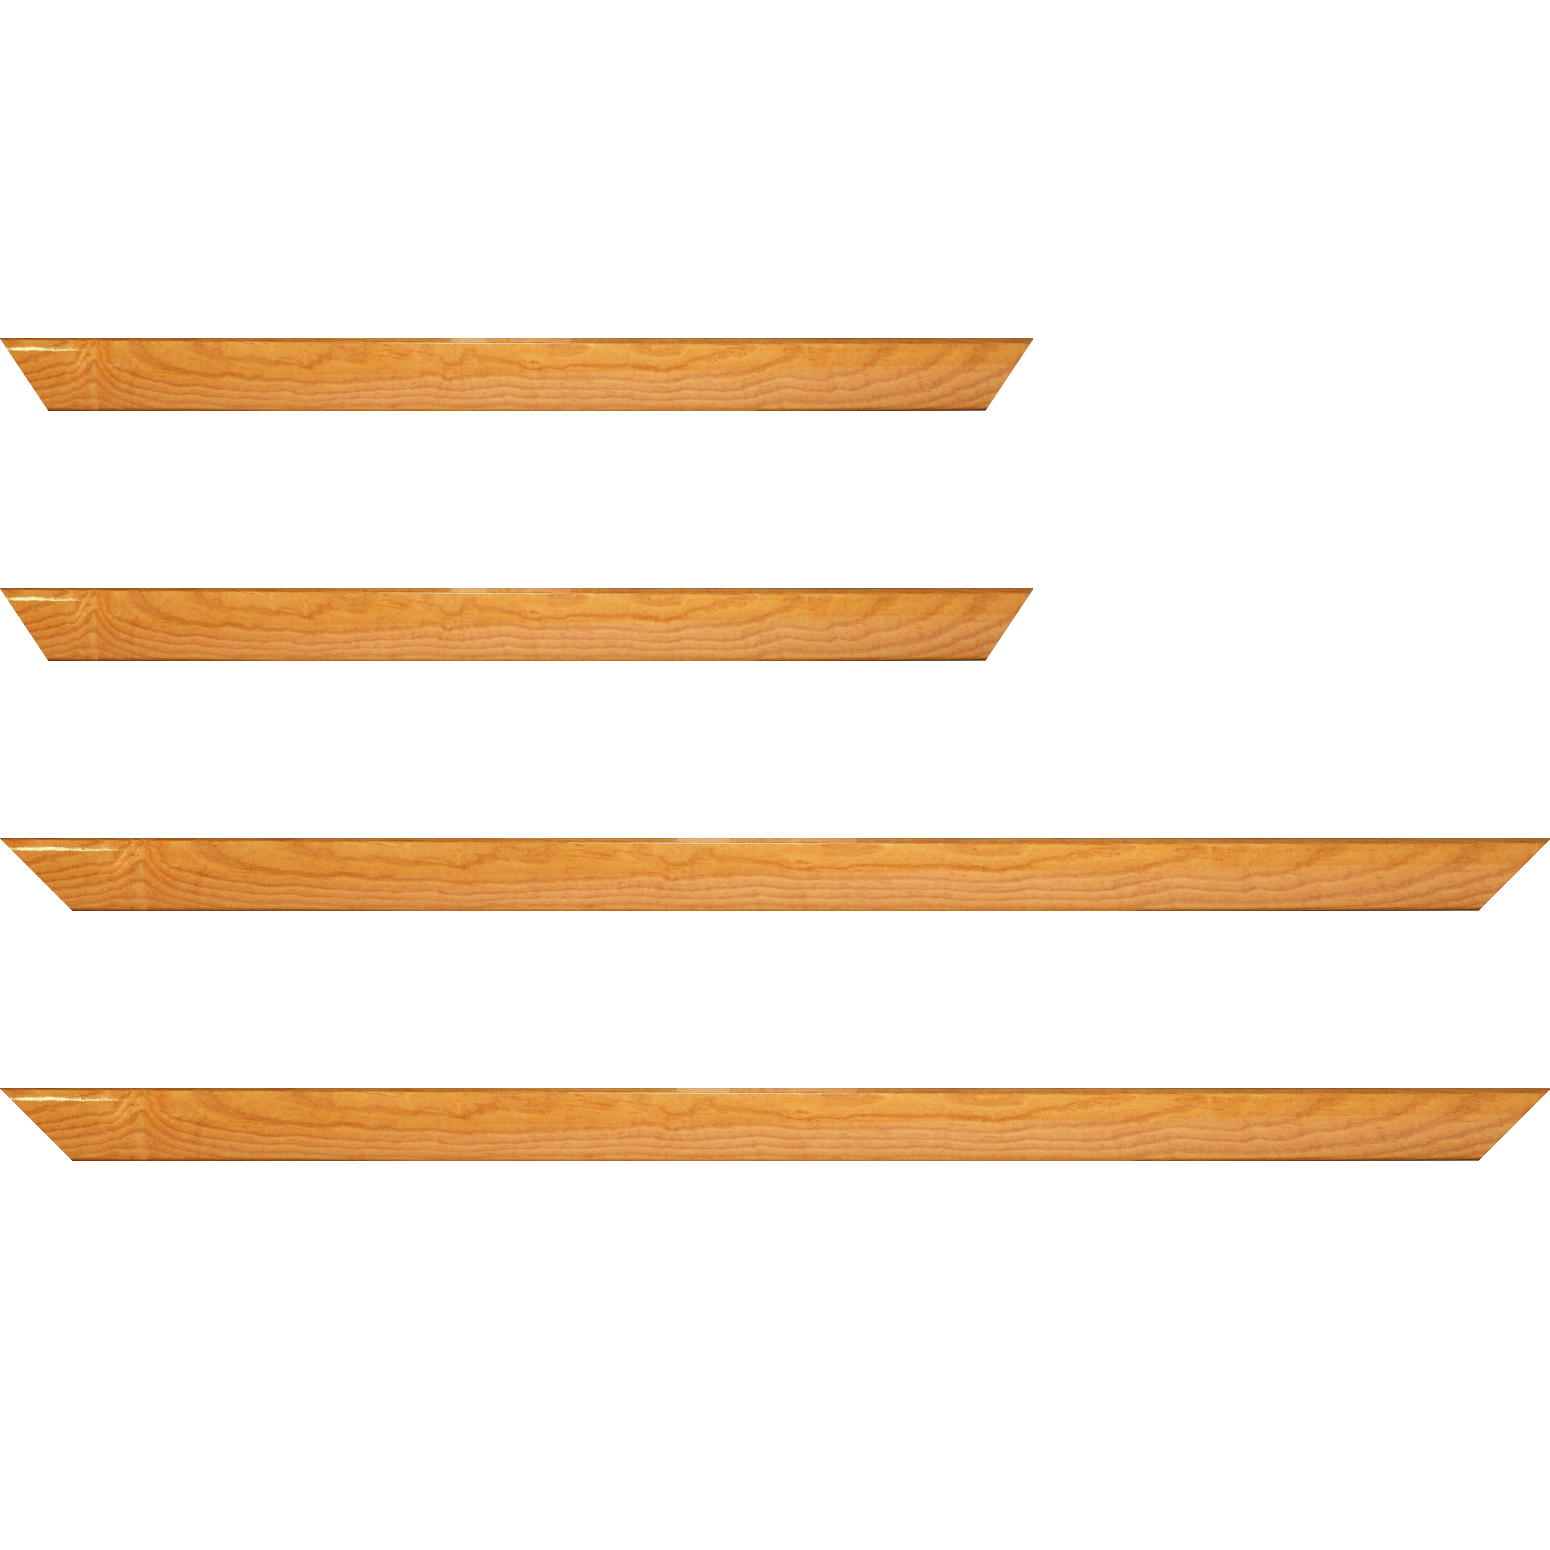 Baguette bois profil arrondi en pente plongeant largeur 2.4cm couleur jaune moutarde finition vernis brillant,veine du bois  apparent (pin) , - 24x30